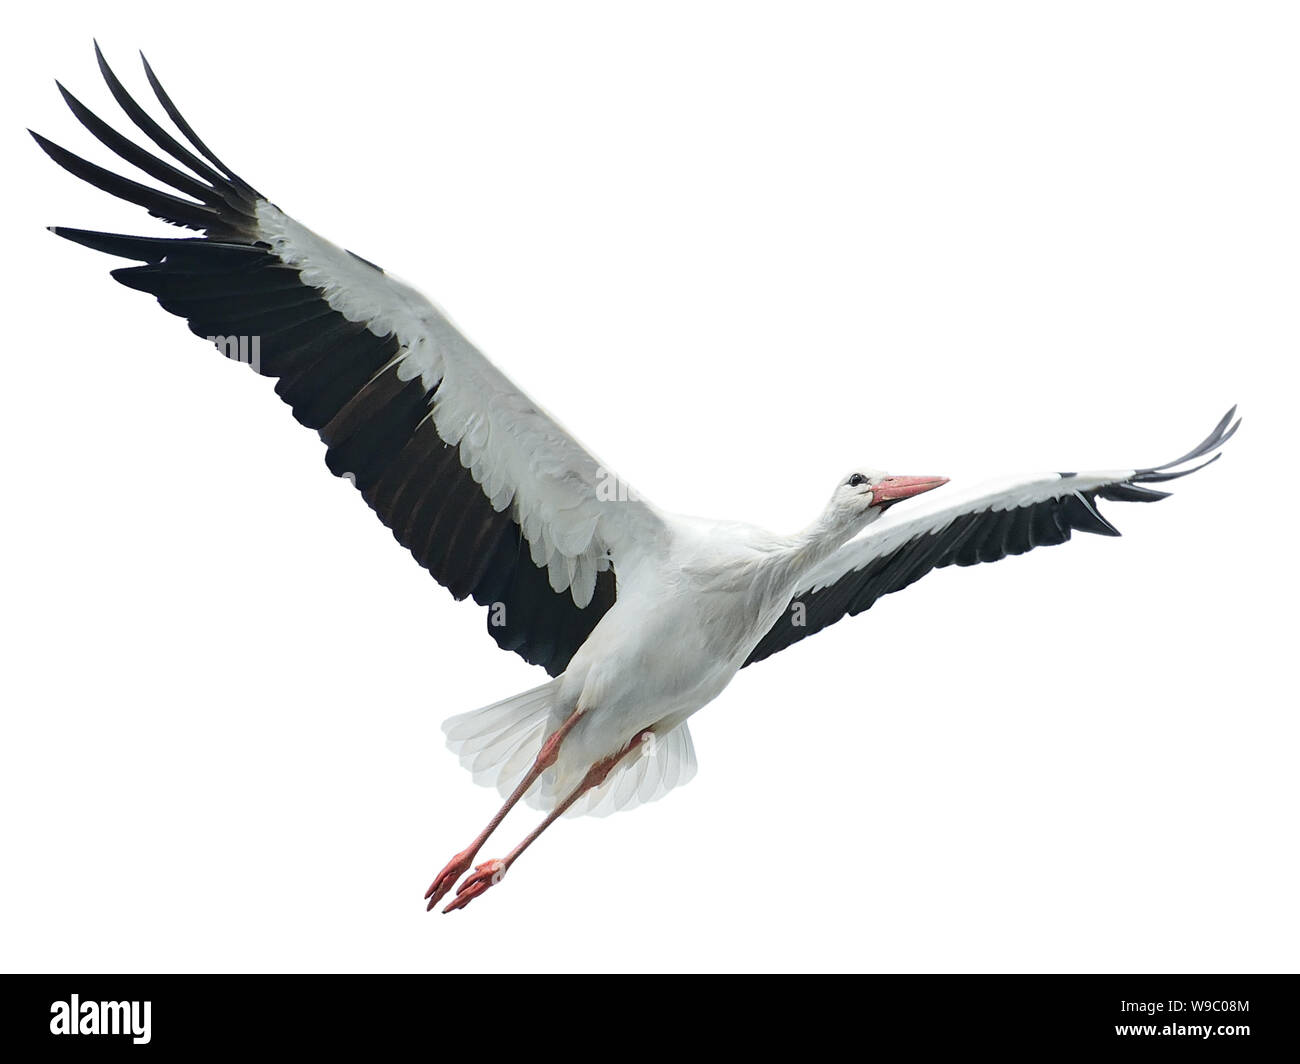 Flying stork isolated on white background Stock Photo